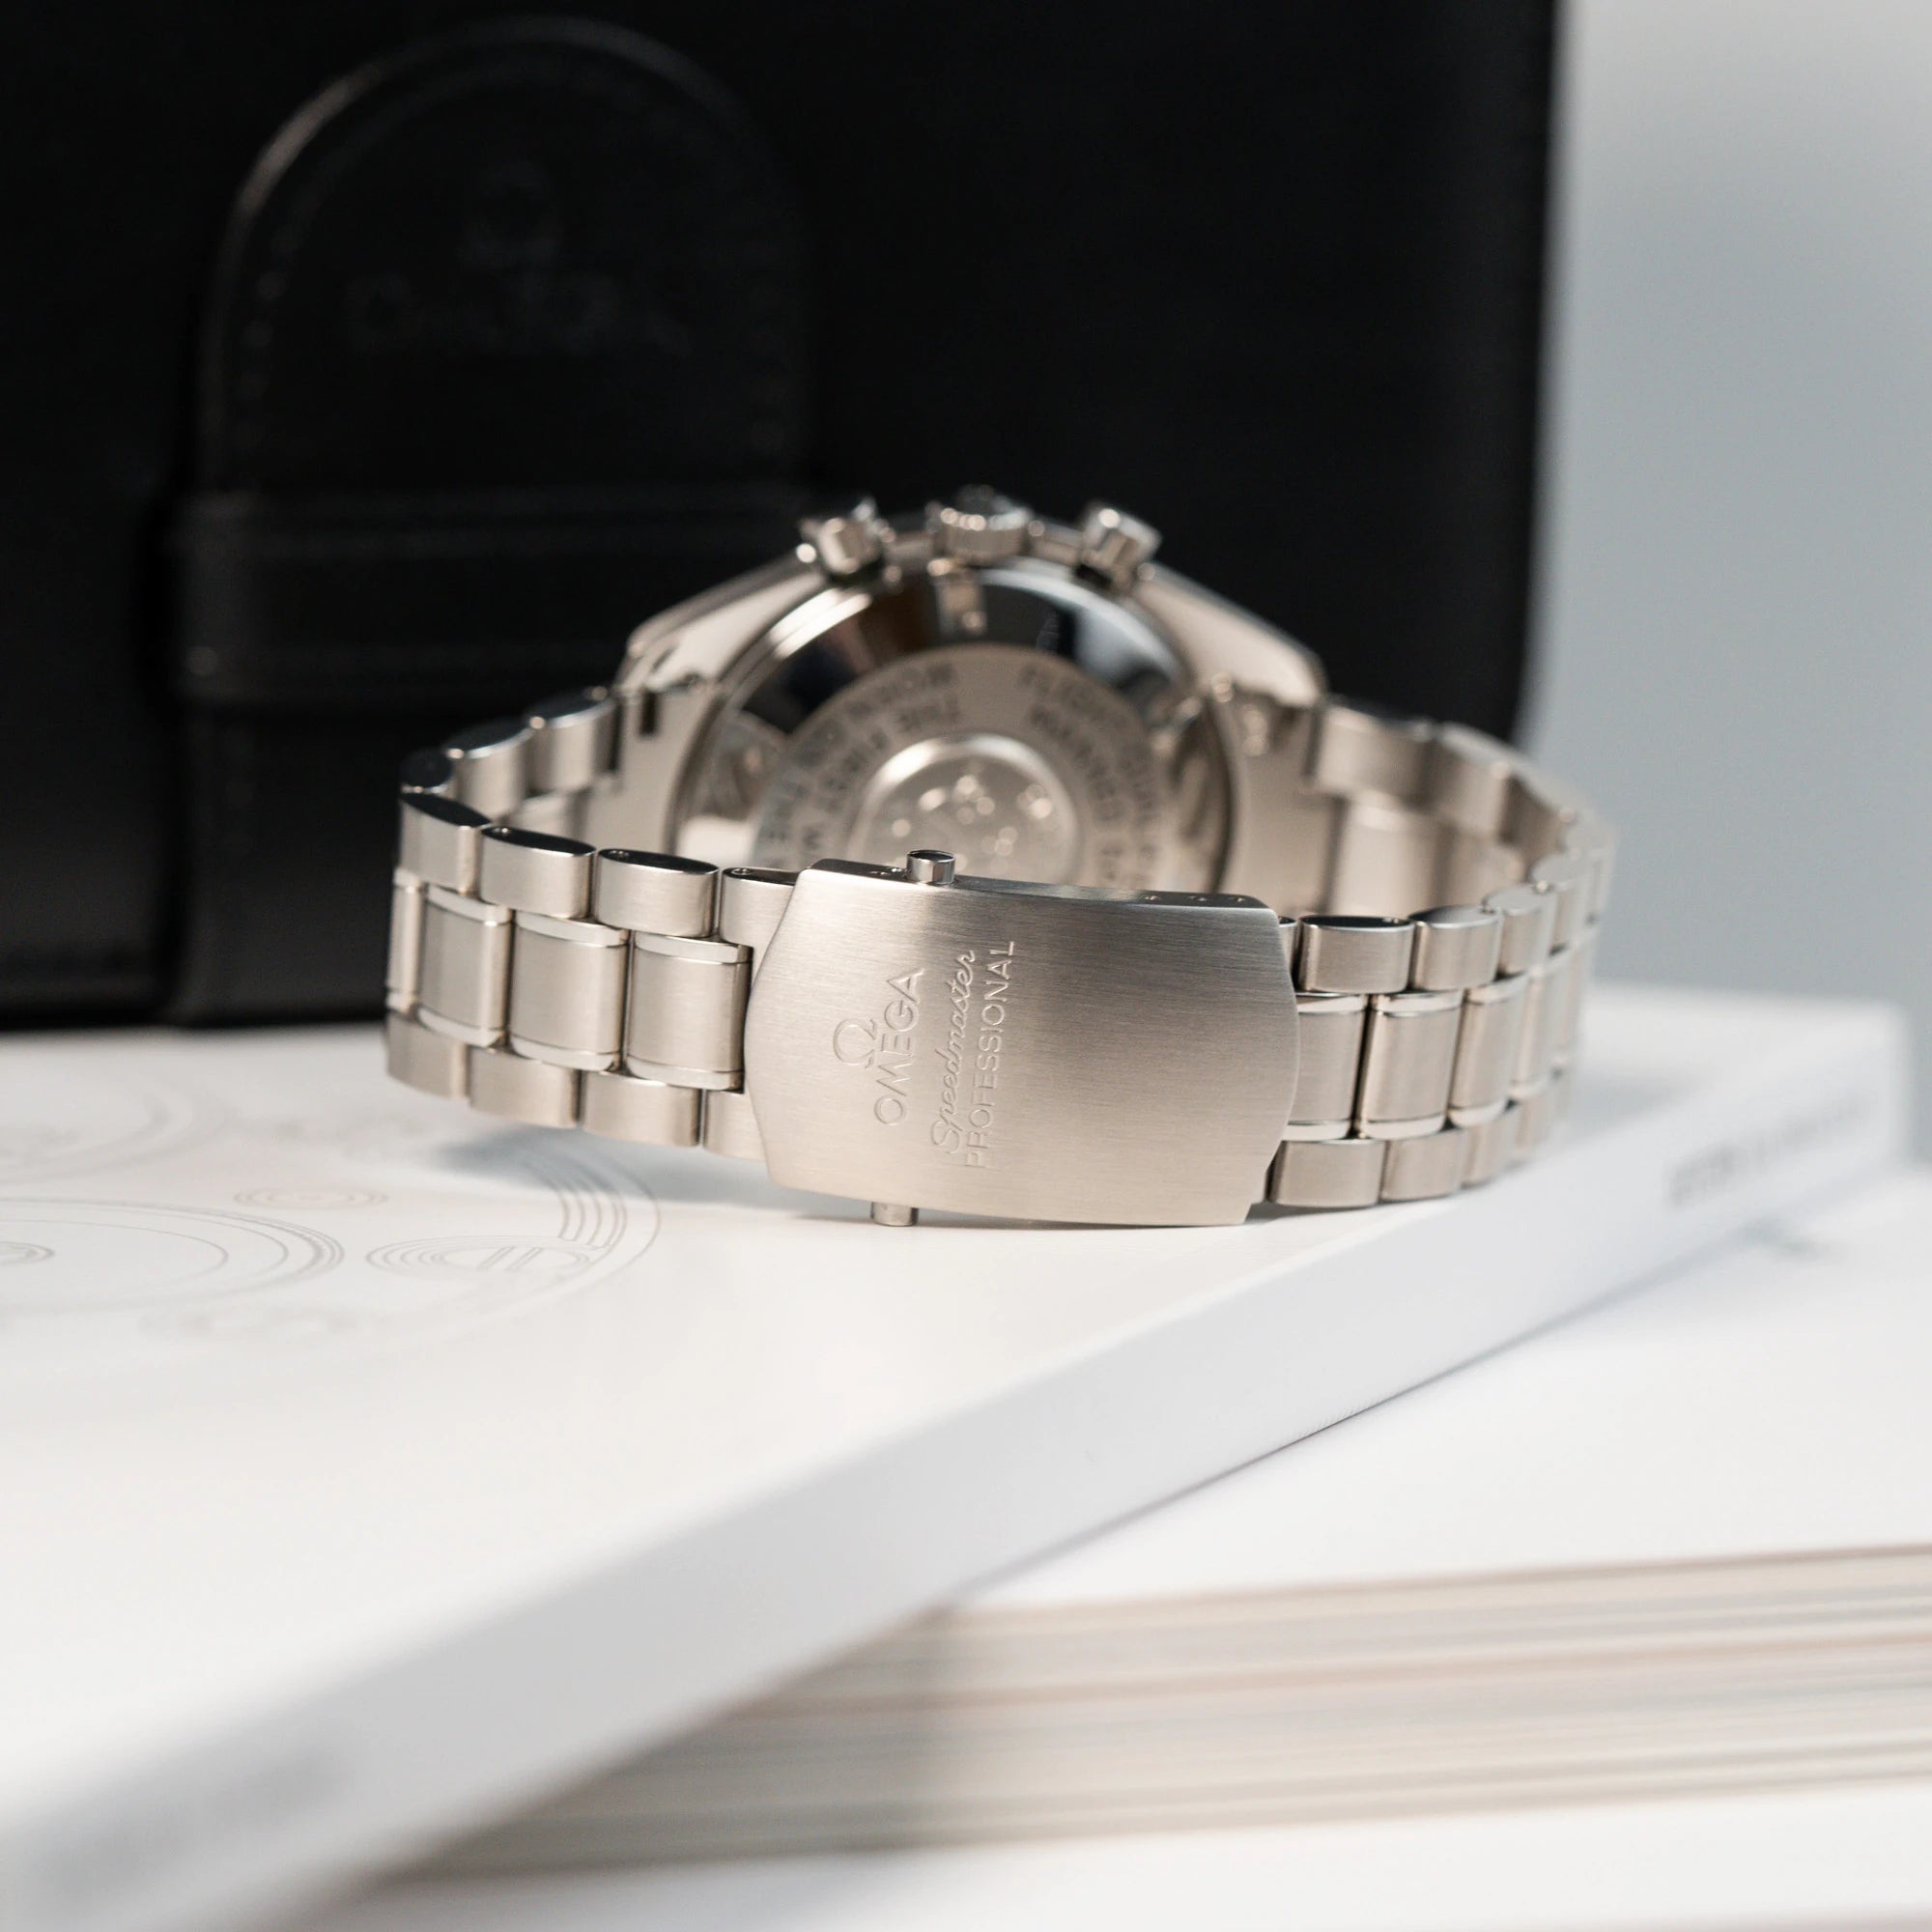 Edelstahl-Armband und geschlossene Faltschließe der Omega Speedmaster Moonwatch Professional mit der Referenz 357.50.00